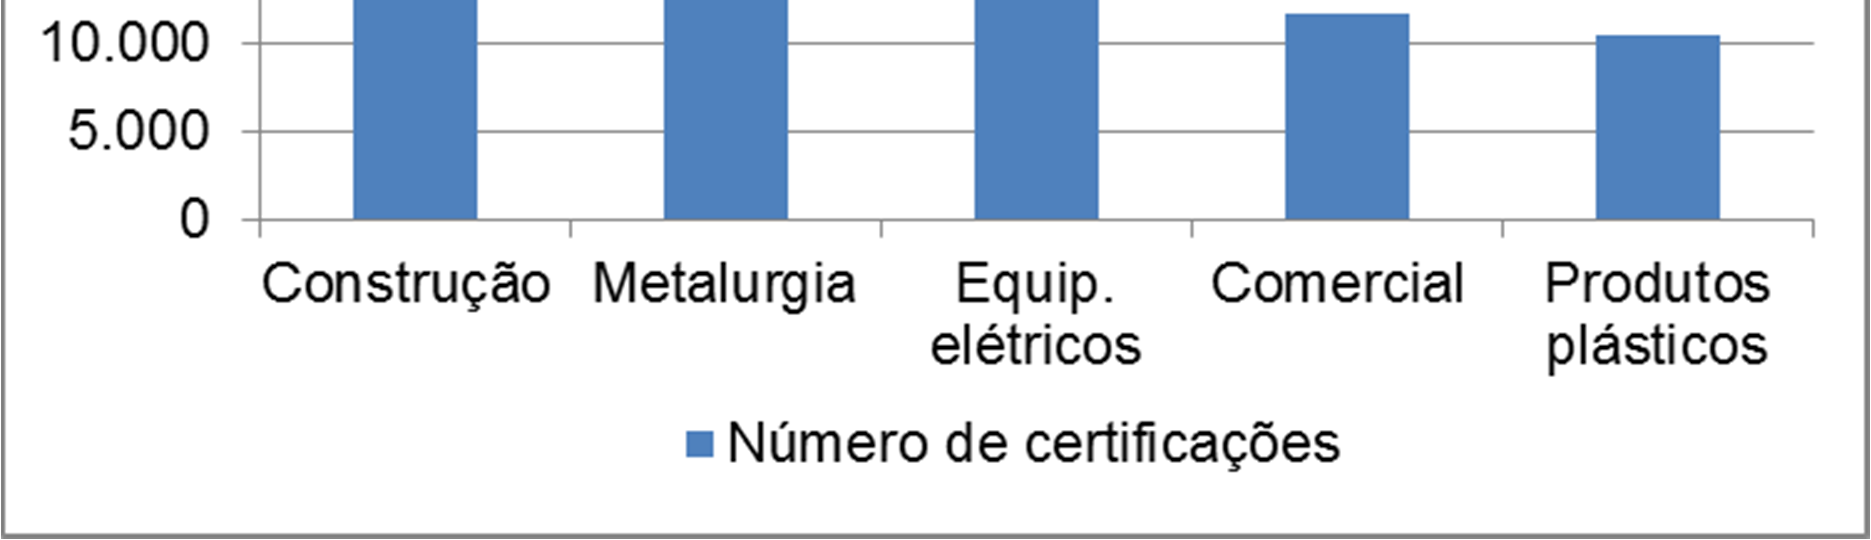 Segundo a Figura 6 os cinco maiores setores industriais em número de certificações ISO 14001 no ano de 2011, são o da Construção com 34.155 certificações; Metalurgia (19.